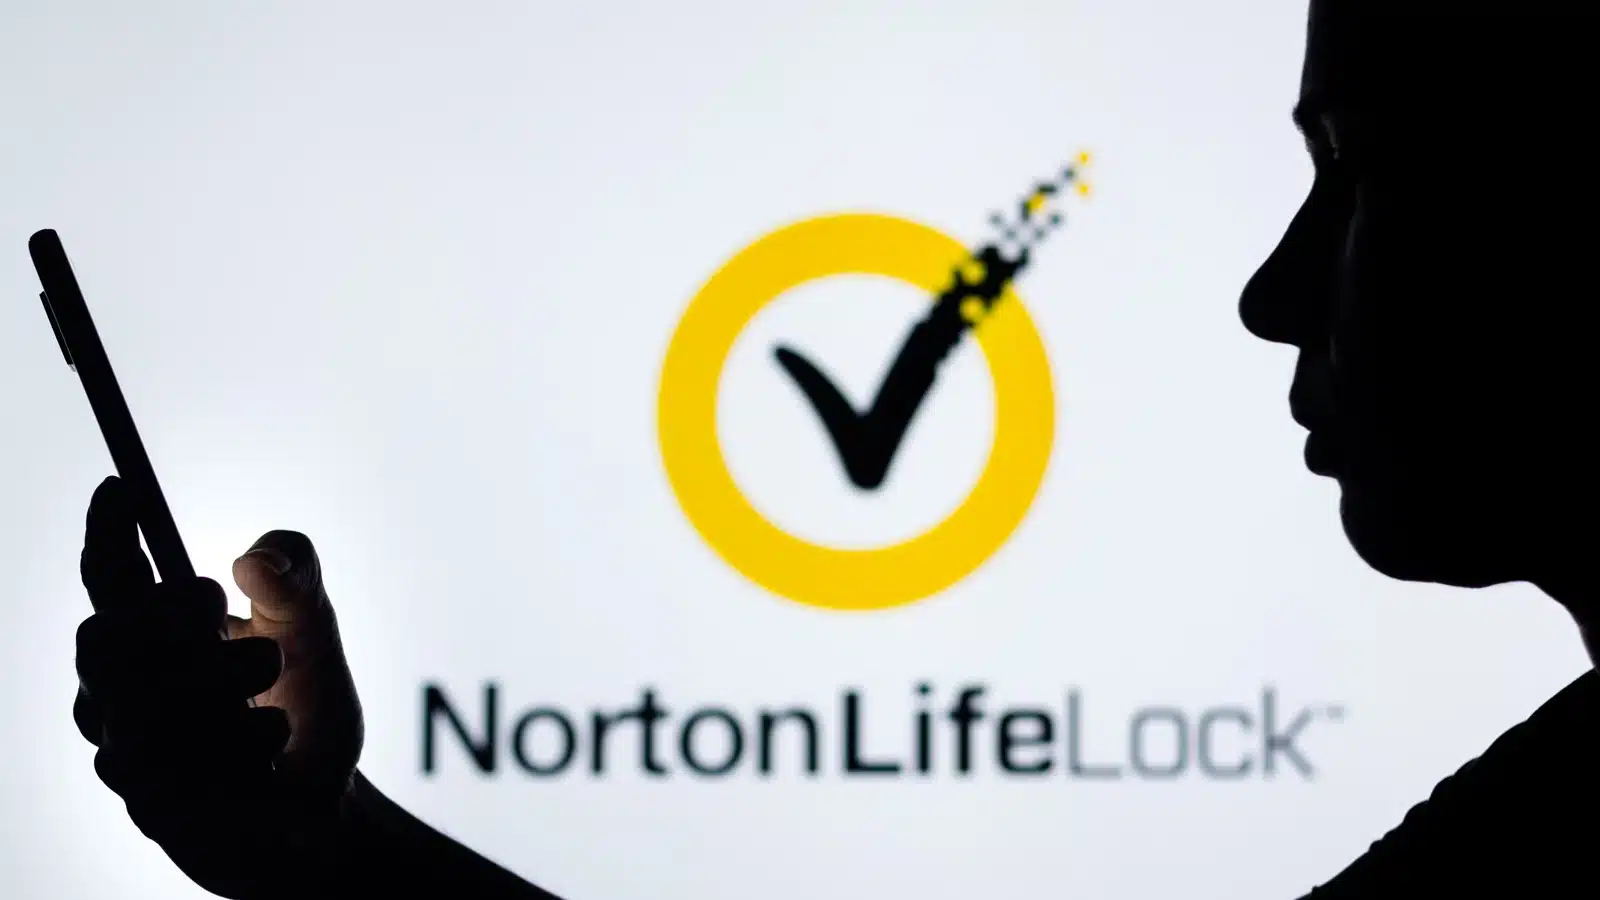 اختراق حسابات الآلاف من عملاء خدمة Norton LifeLock